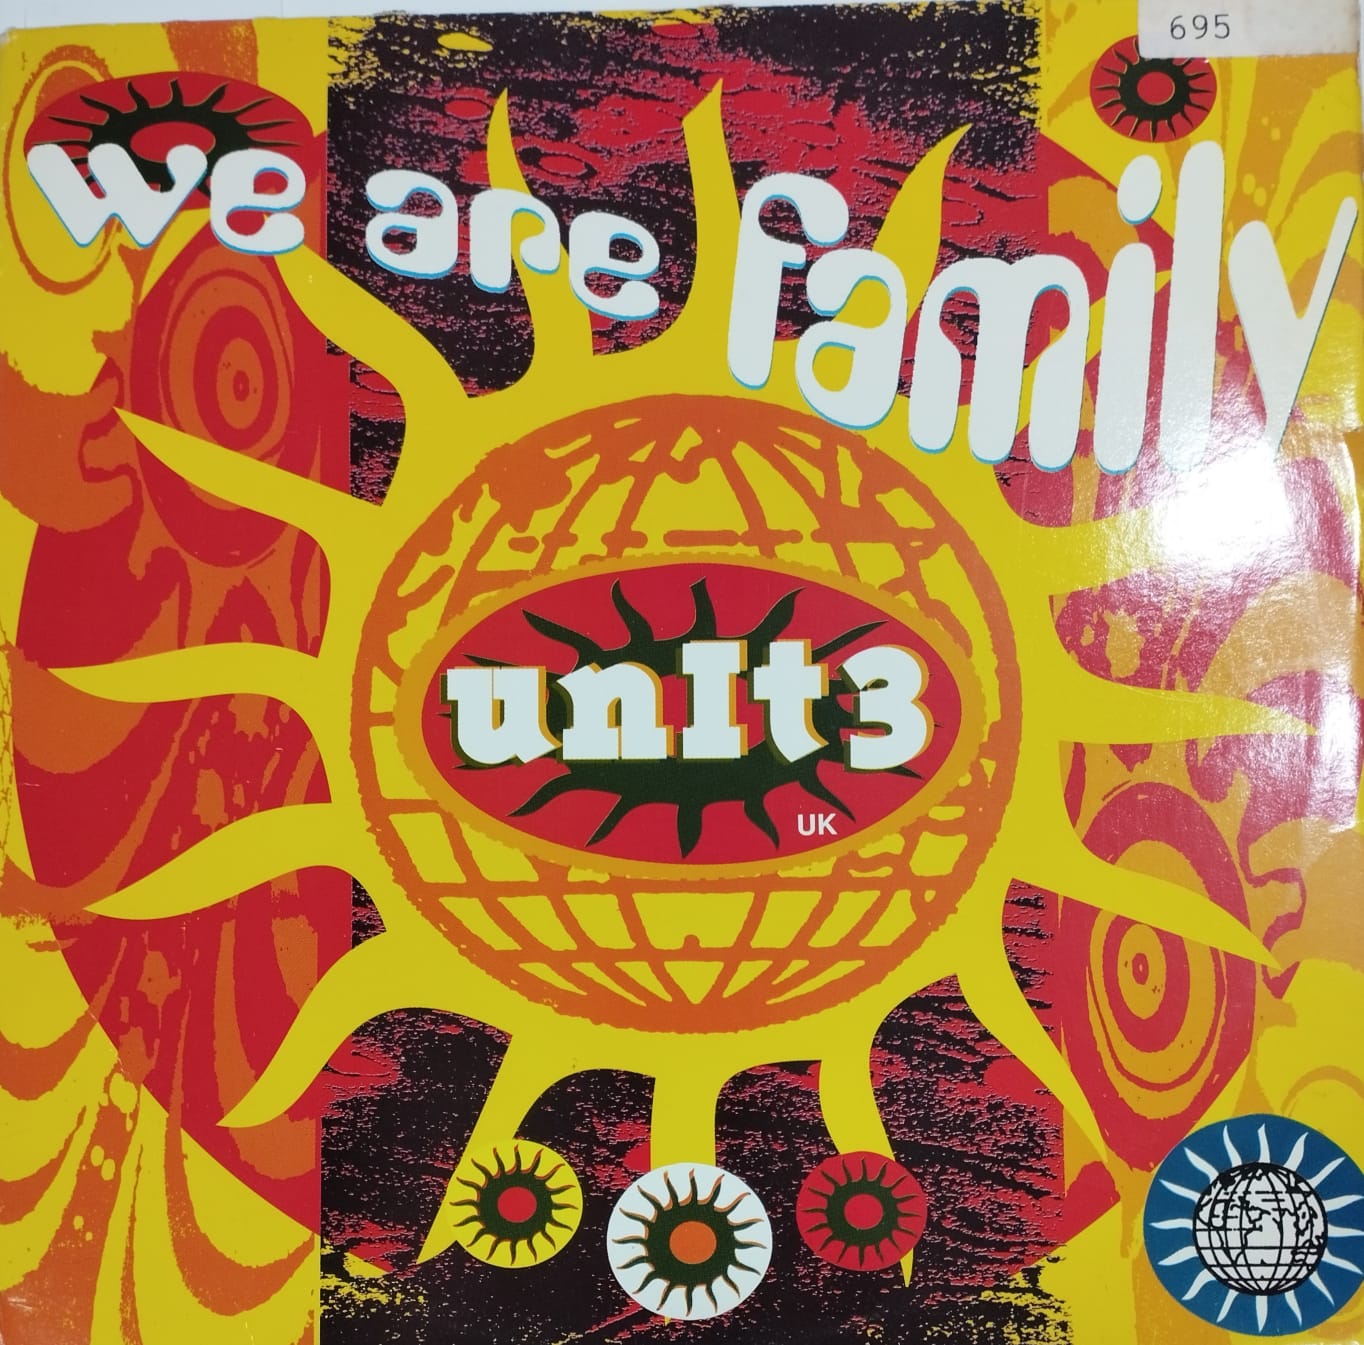 Unit 3 UK - We Are Family (Single)